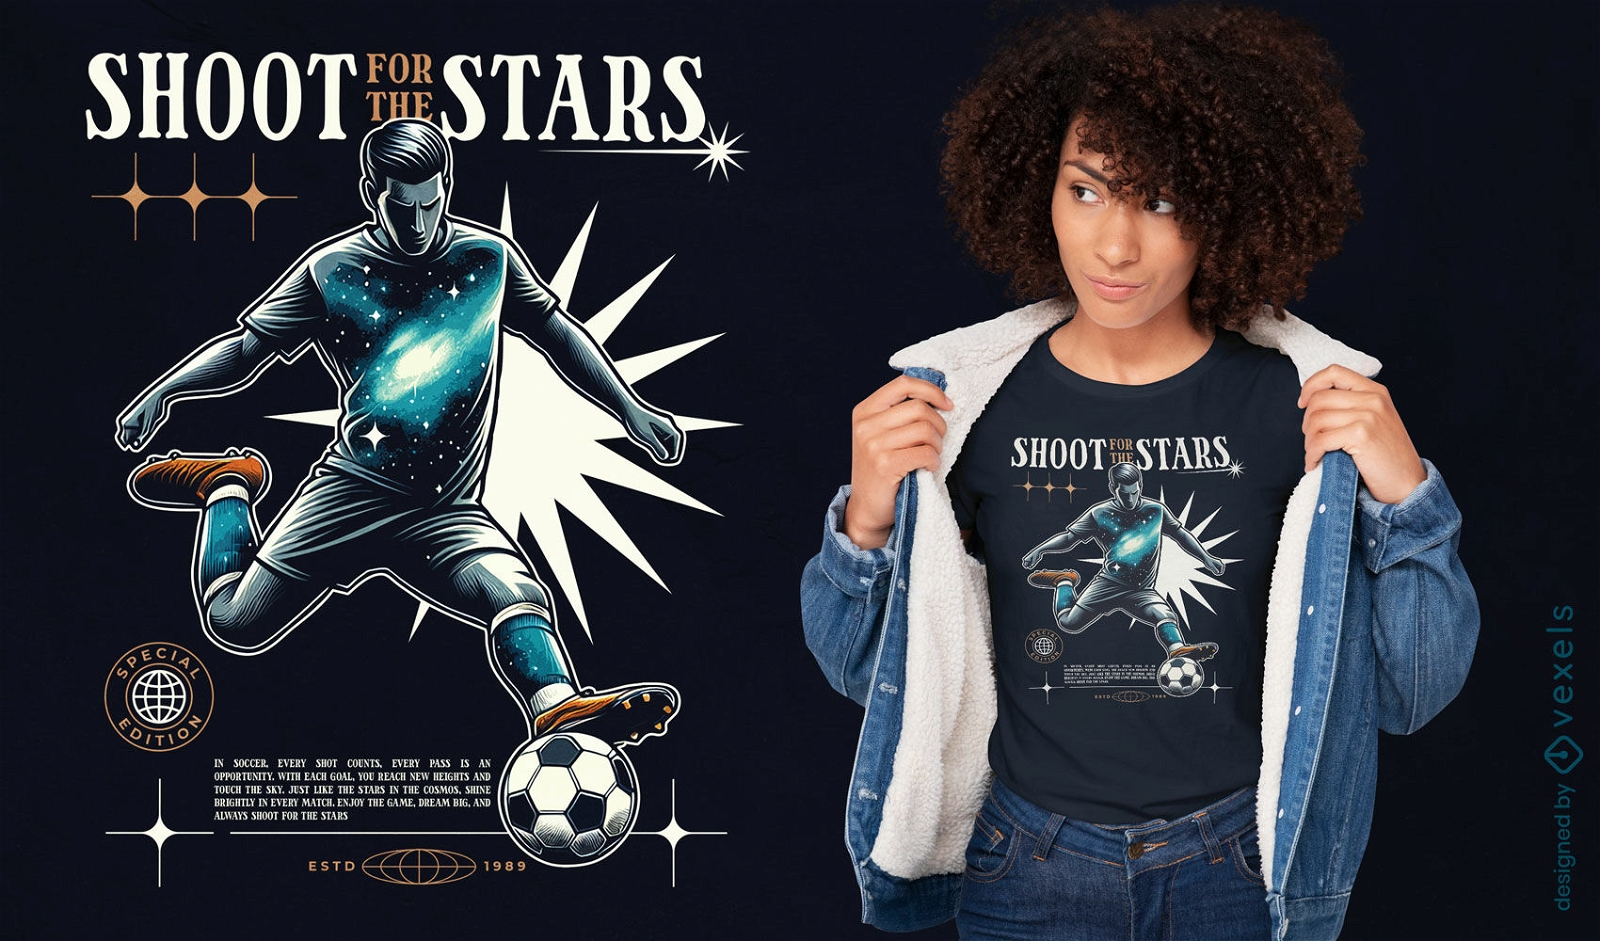 Shoot for the stars t-shirt design